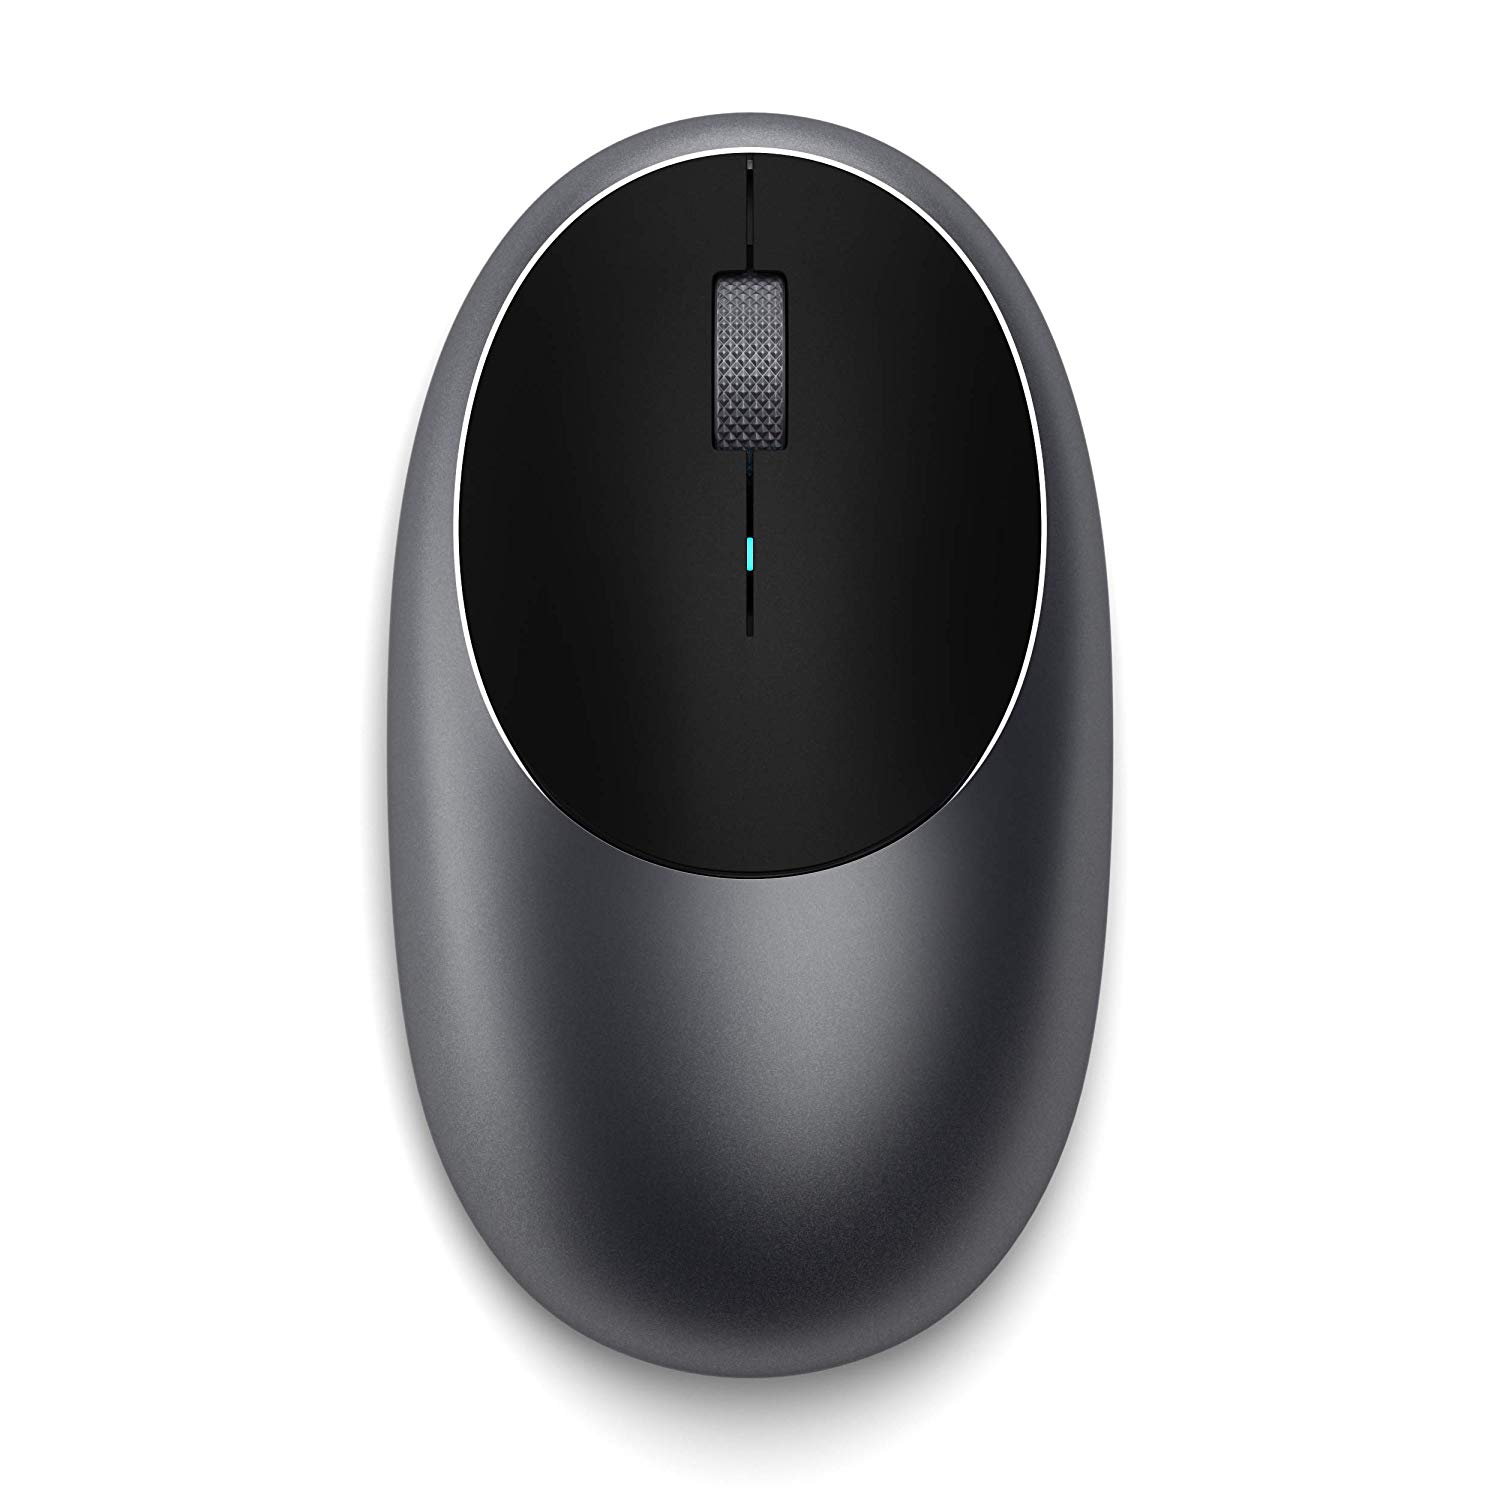 Satechi、Bluetoothワイヤレスマウス｢Satechi M1｣を国内でも販売開始